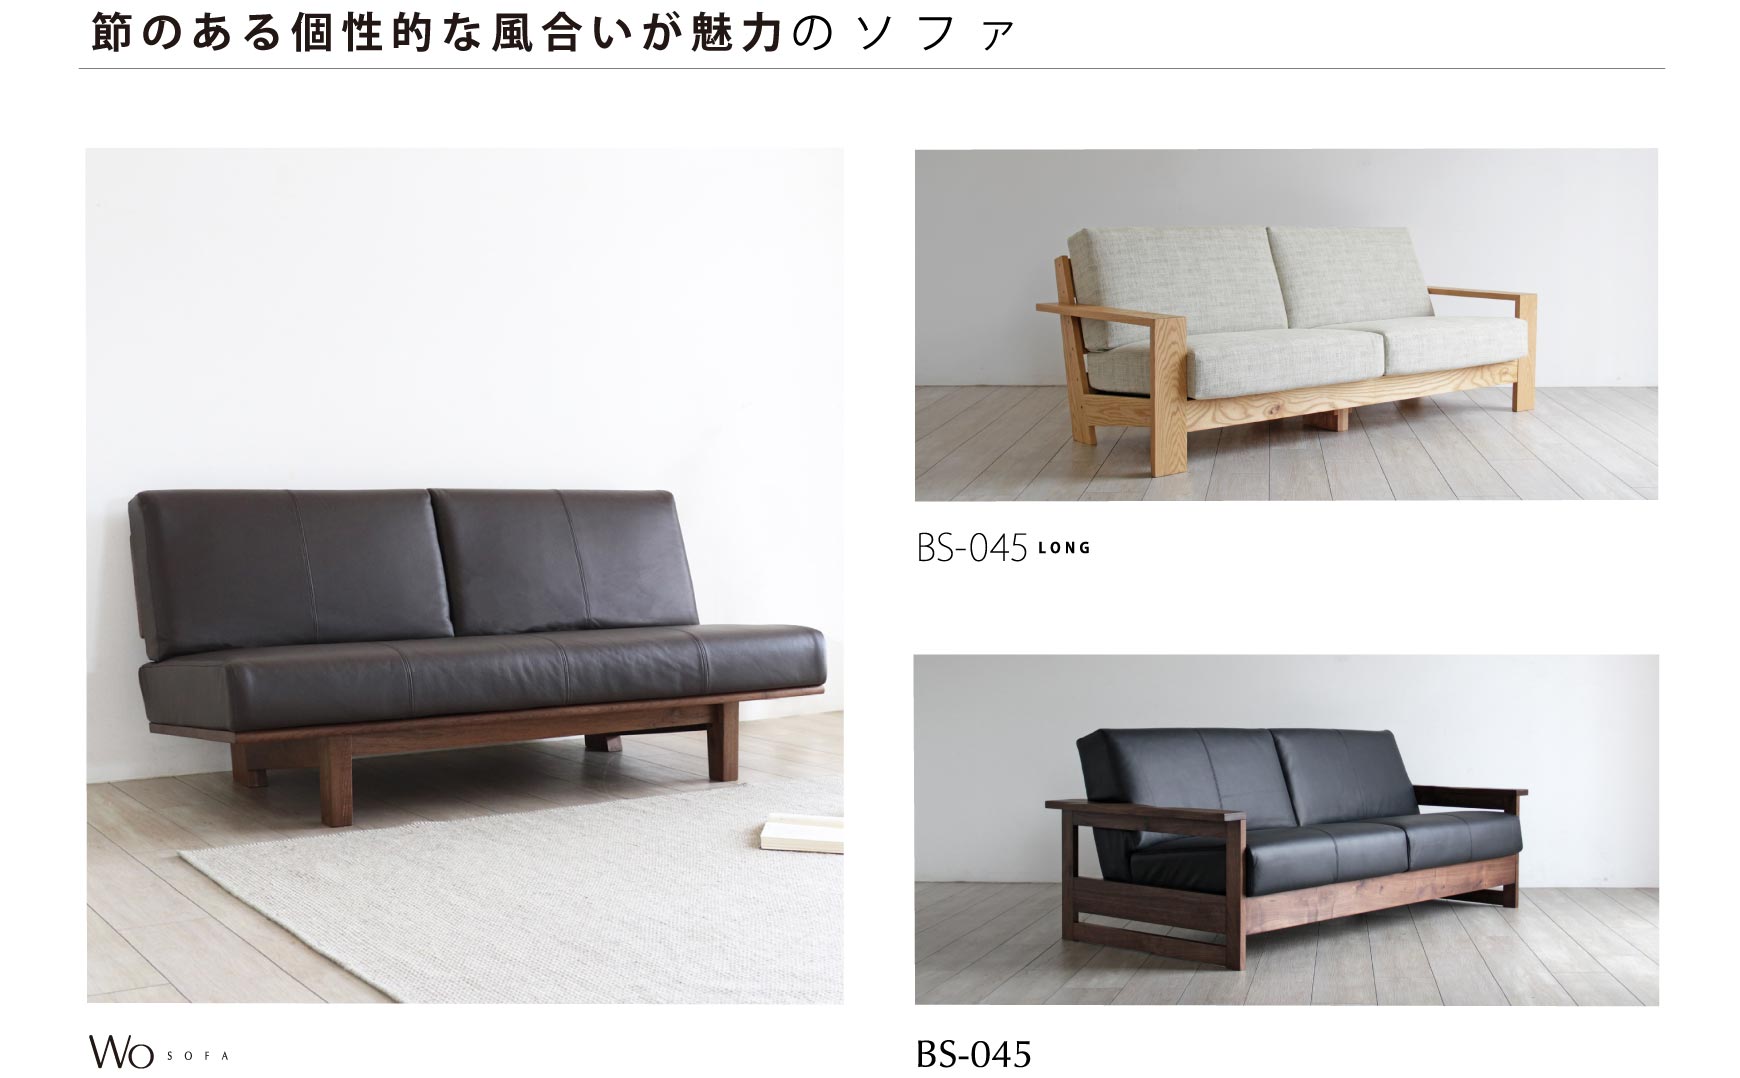 日本の職人が丁寧につくり上げる上質な座り心地のソファ